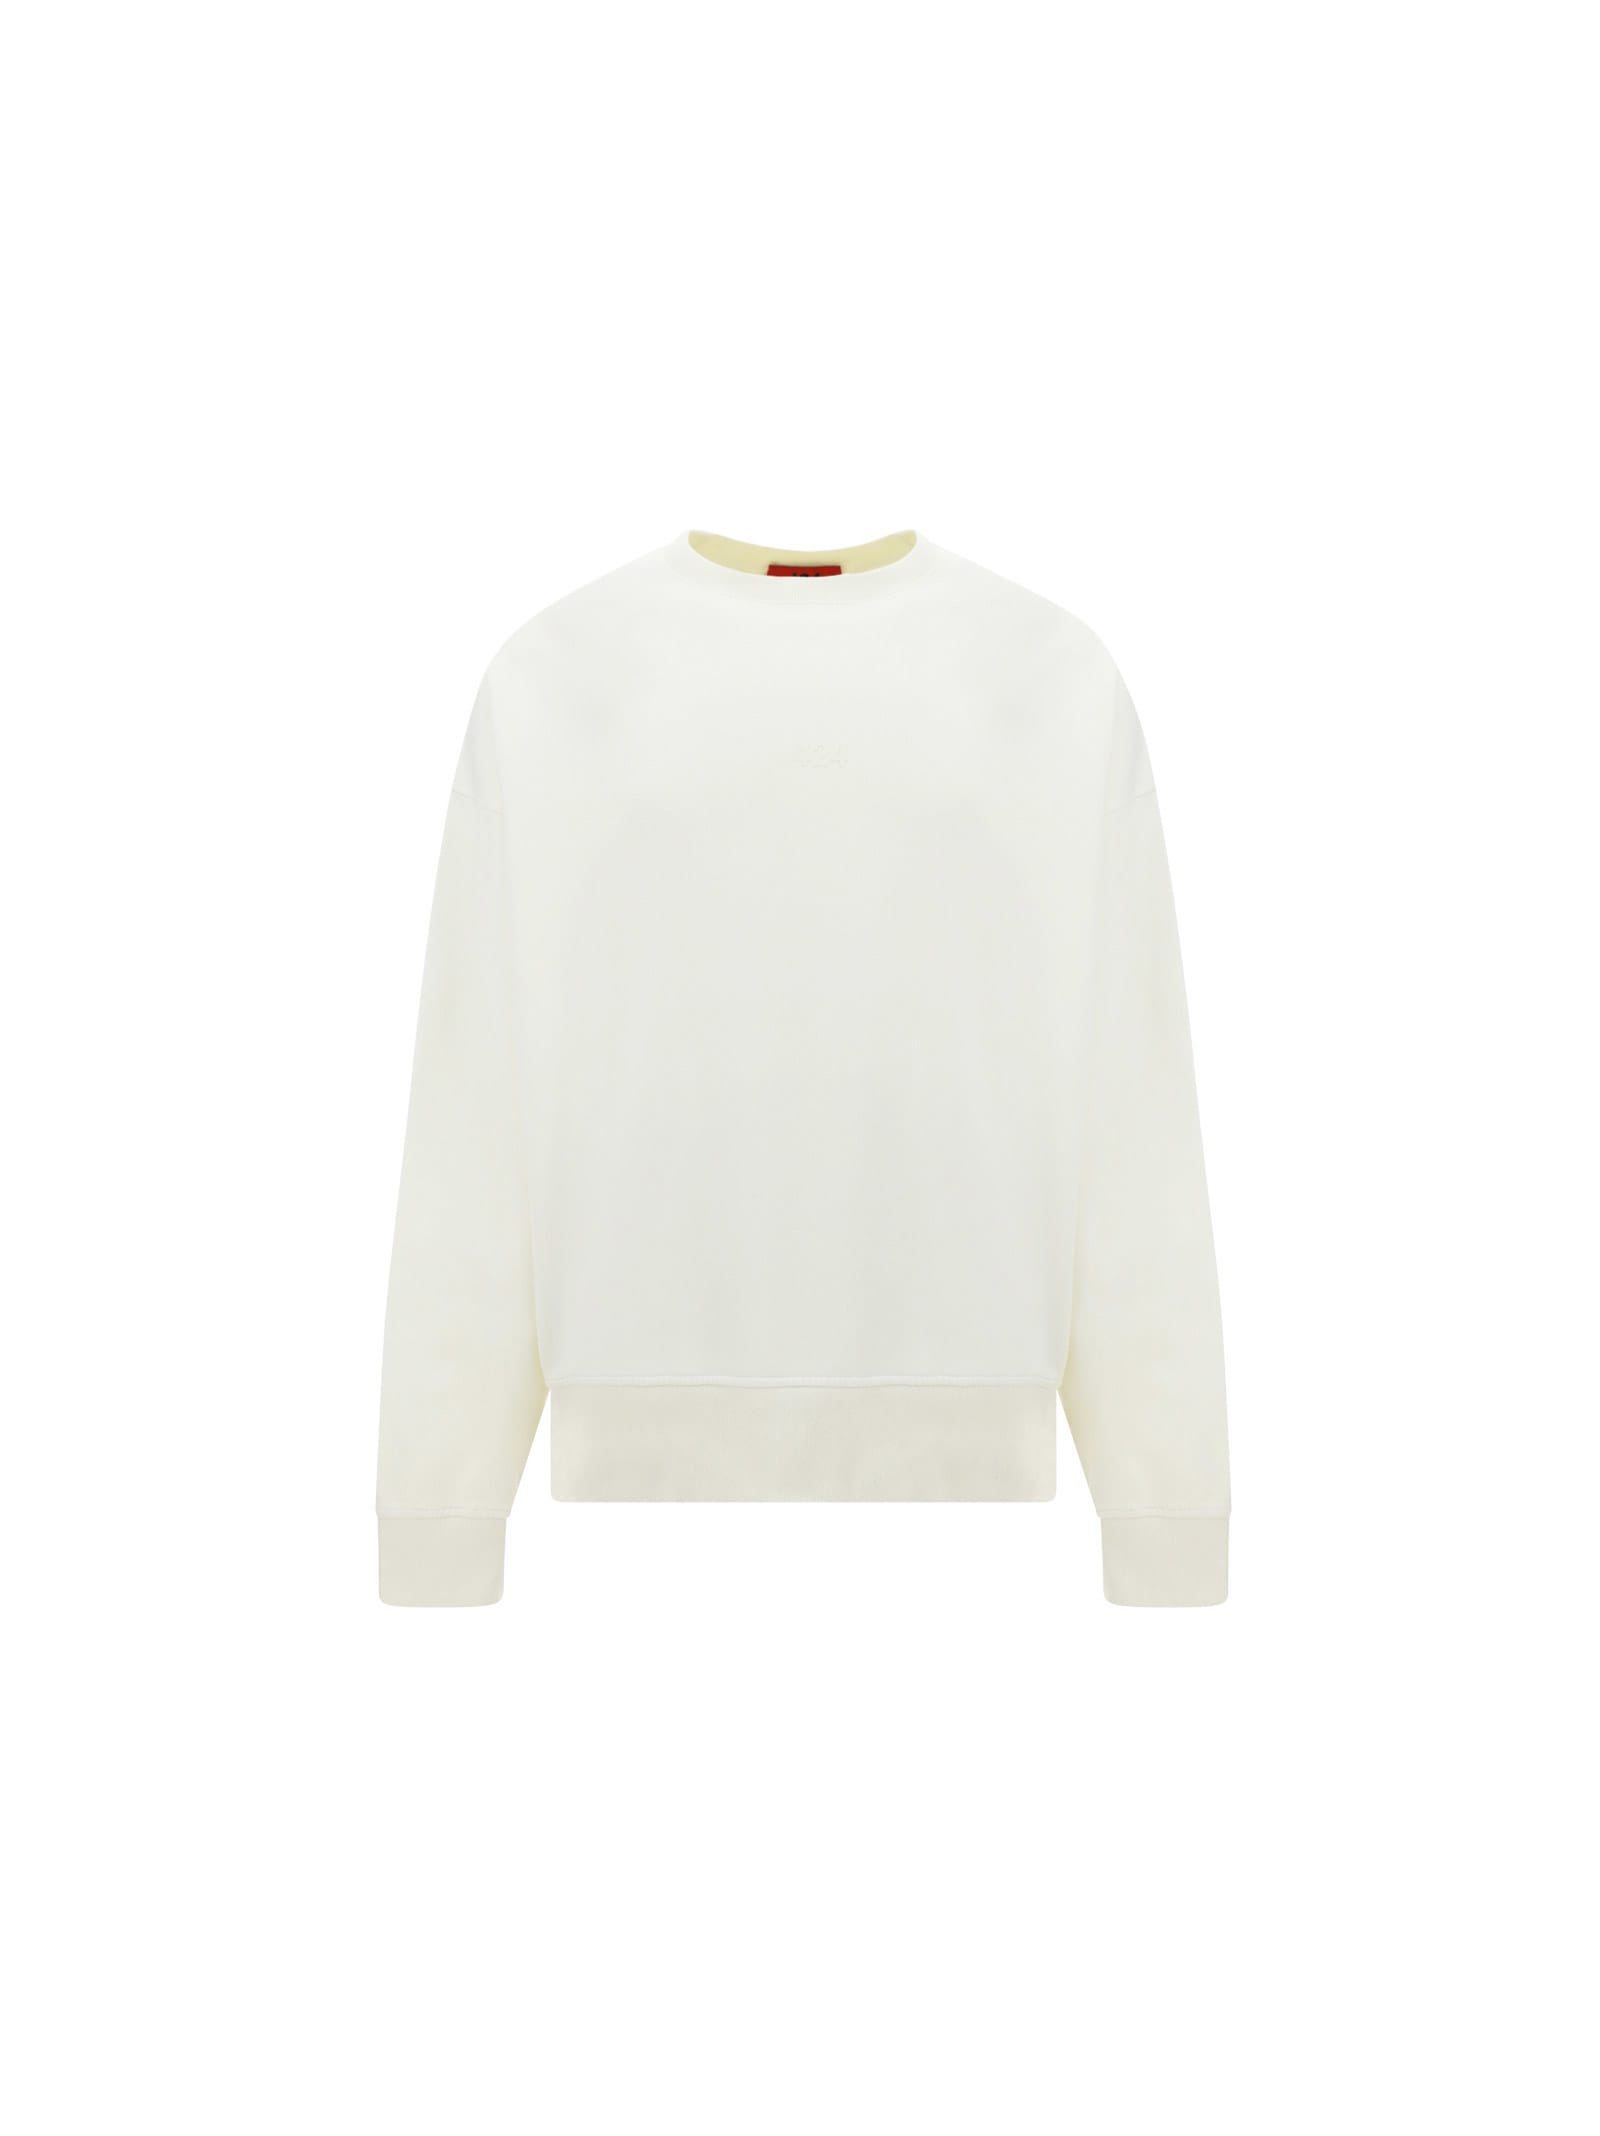 Fourtwofour On Fairfax Sweatshirt In White